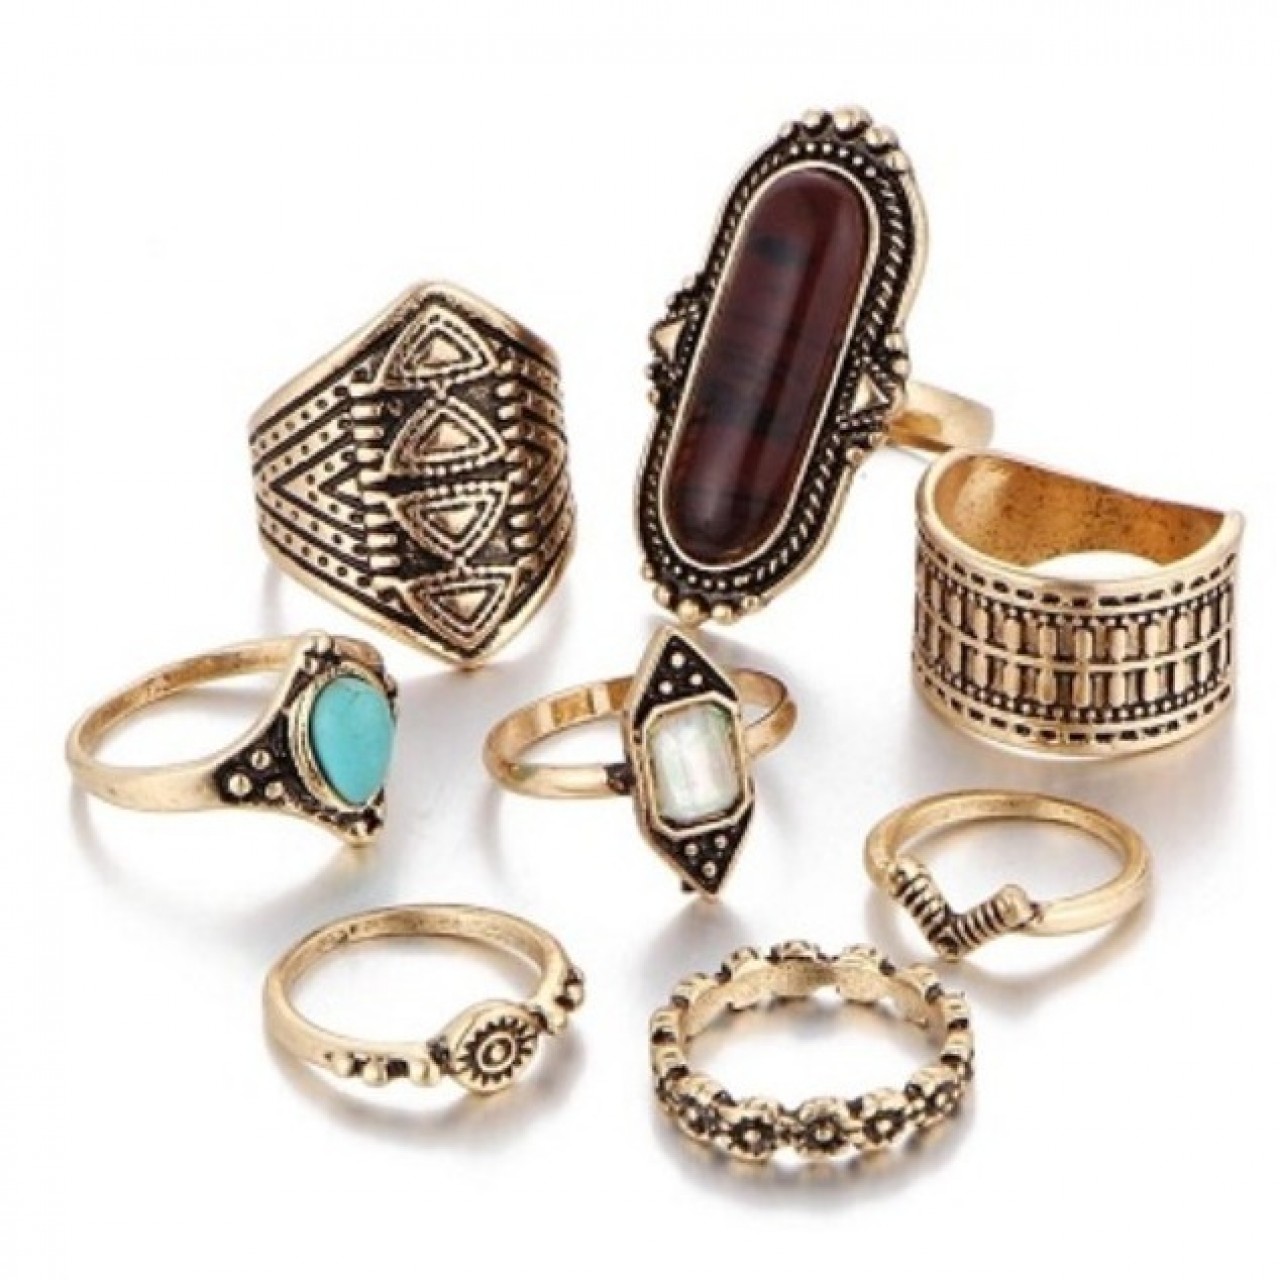 8 pcs Set Boho Jewelry Stone Midi Ring Sets for Women